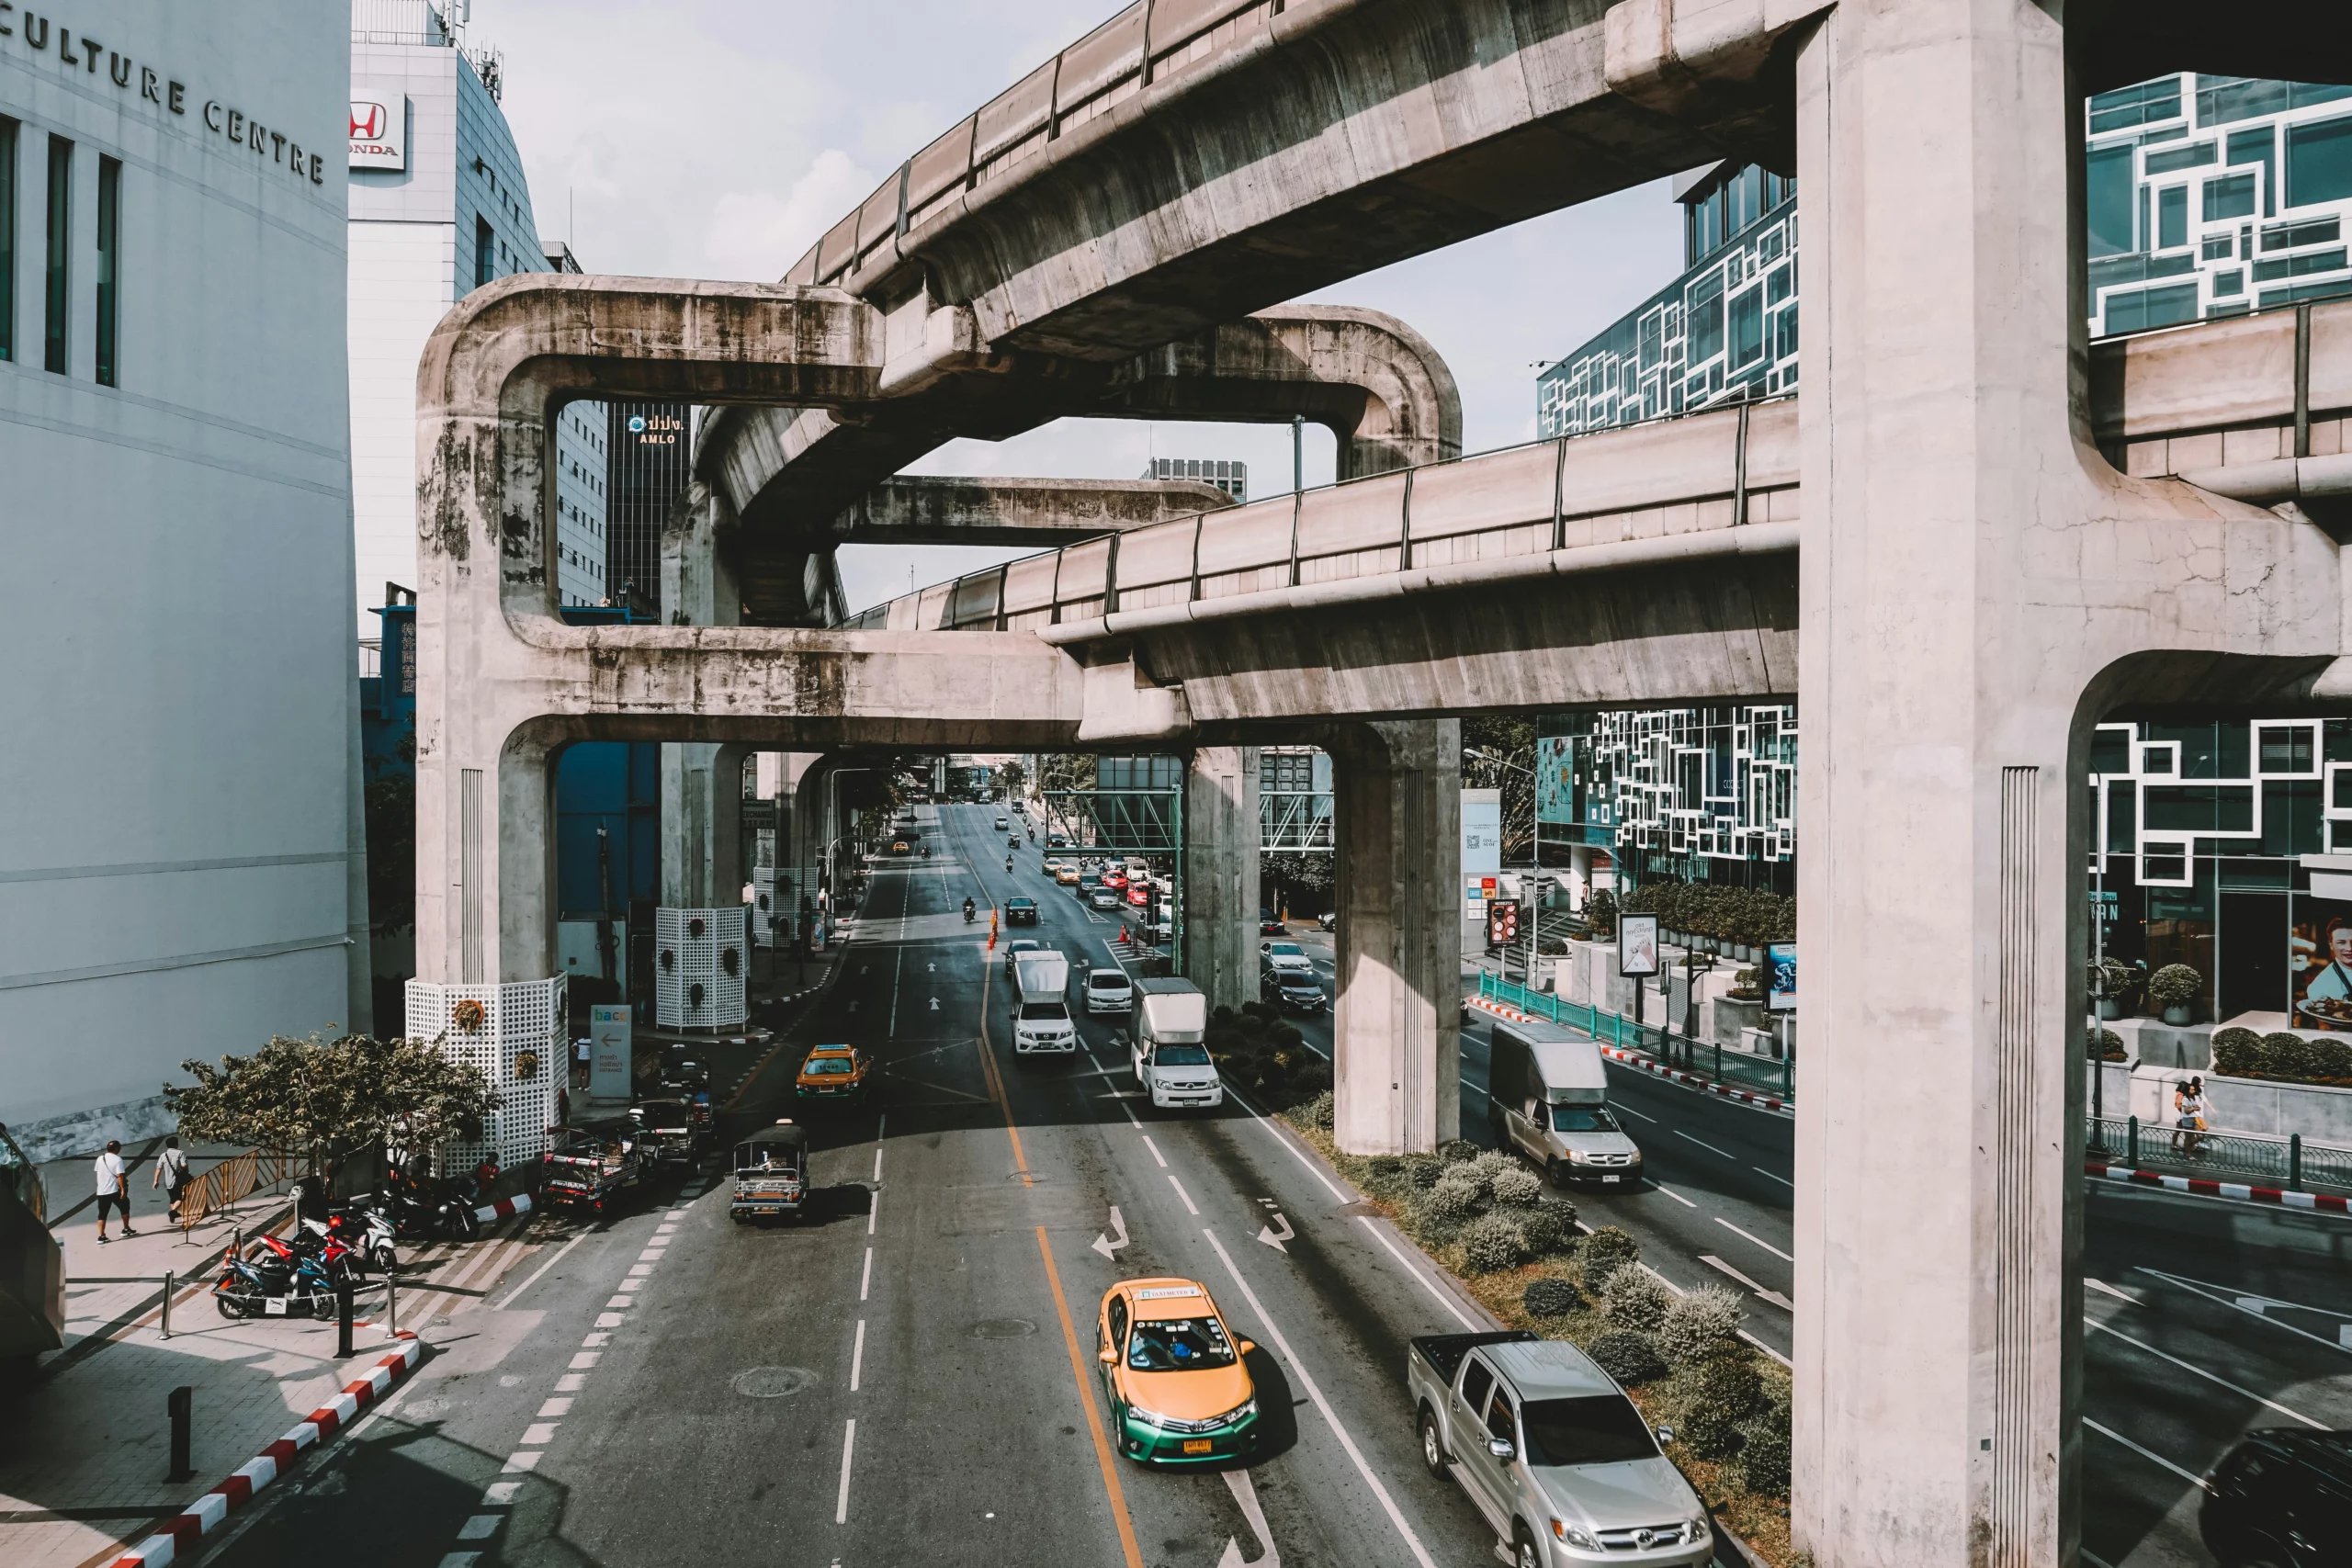 曼谷租車,曼谷街道圖,延綿交錯的天橋,地面車道許多車輛通行中